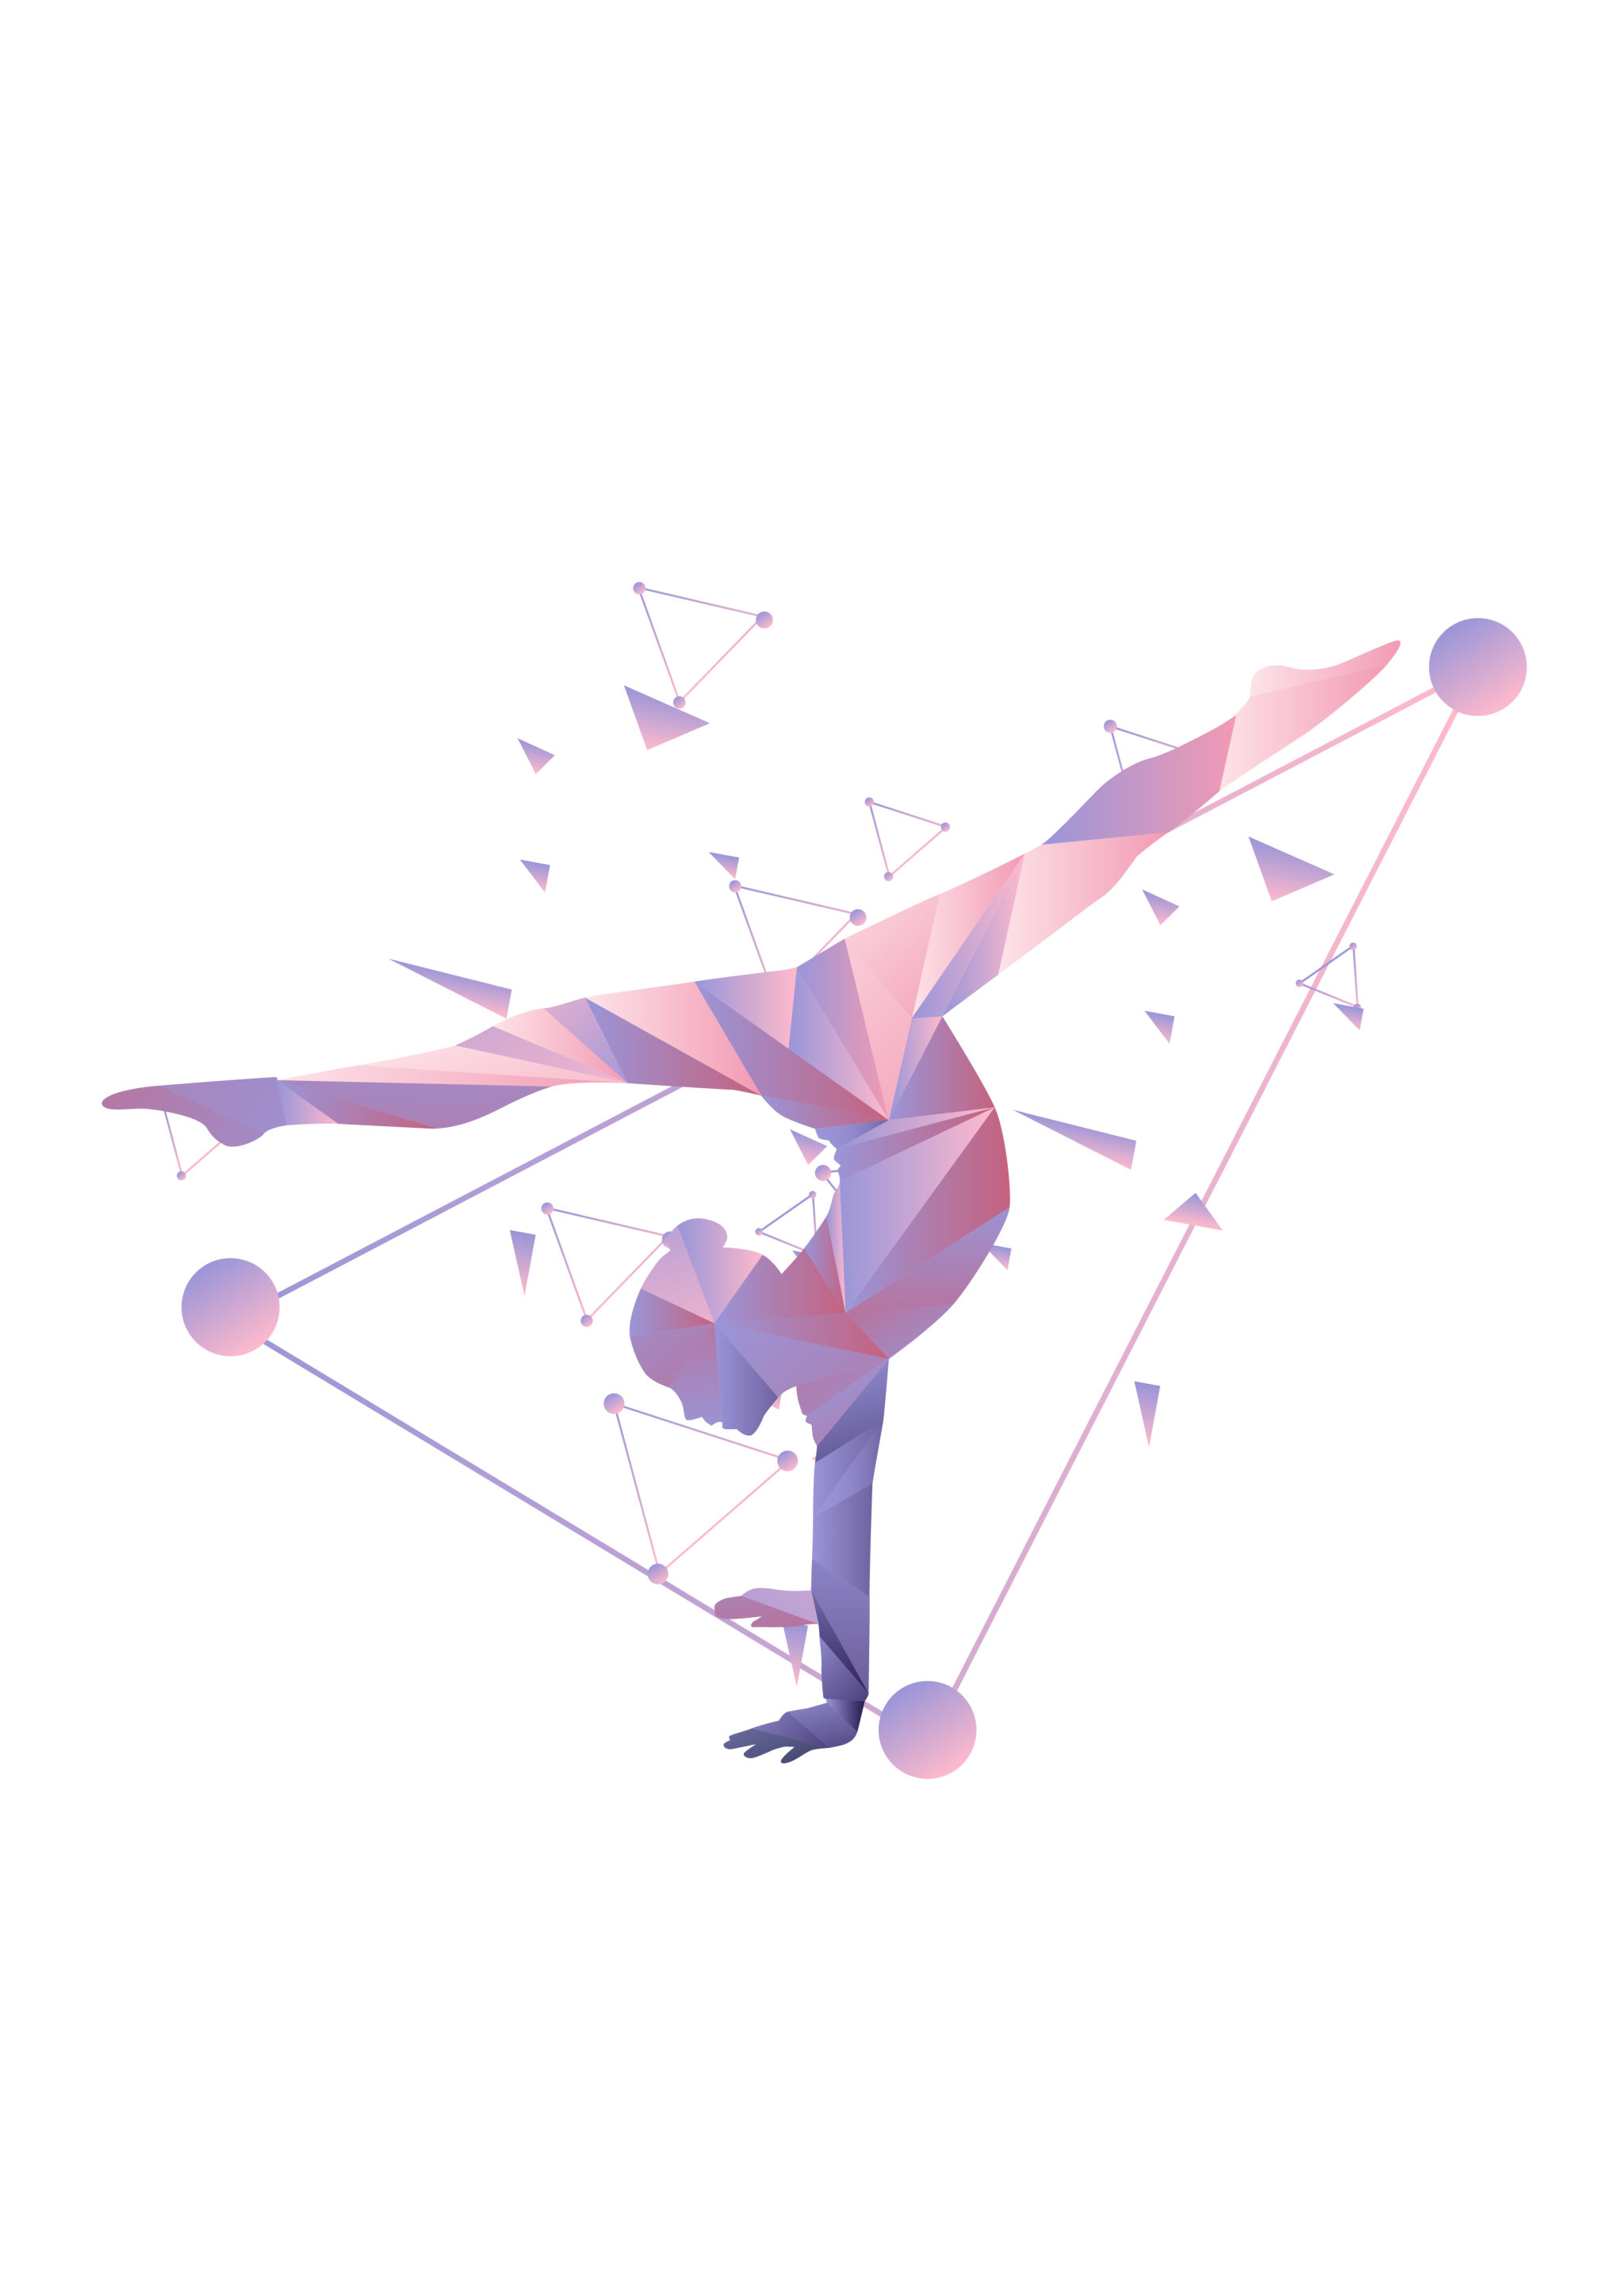 抽象风运动人物网球体操配色1